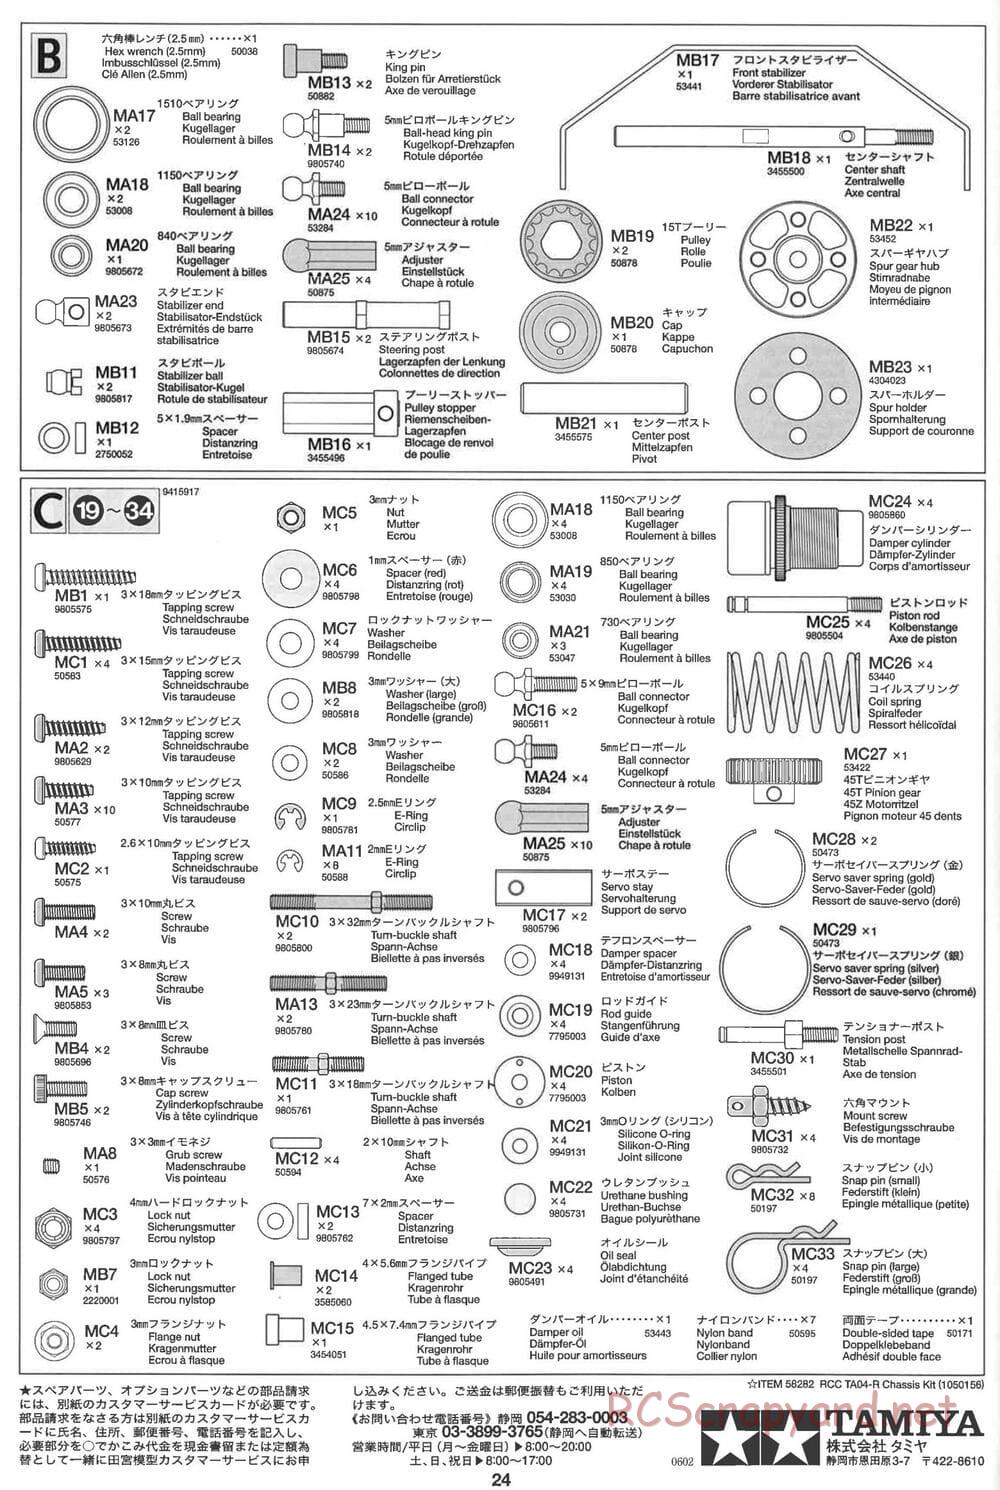 Tamiya - TA-04R Chassis - Manual - Page 24